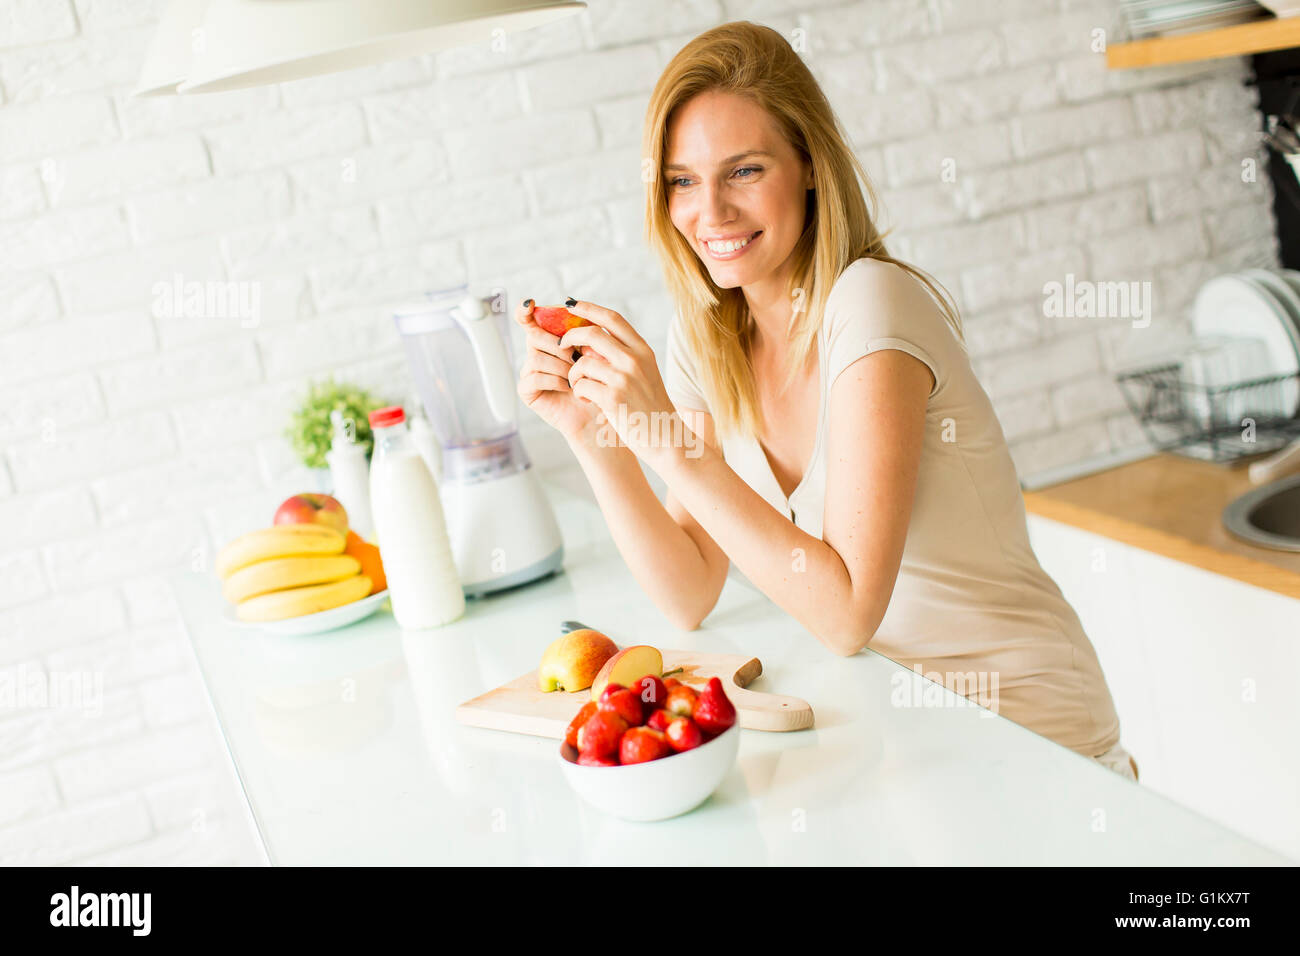 Jolie jeune femme la préparation des fruits dans la cuisine moderne Banque D'Images